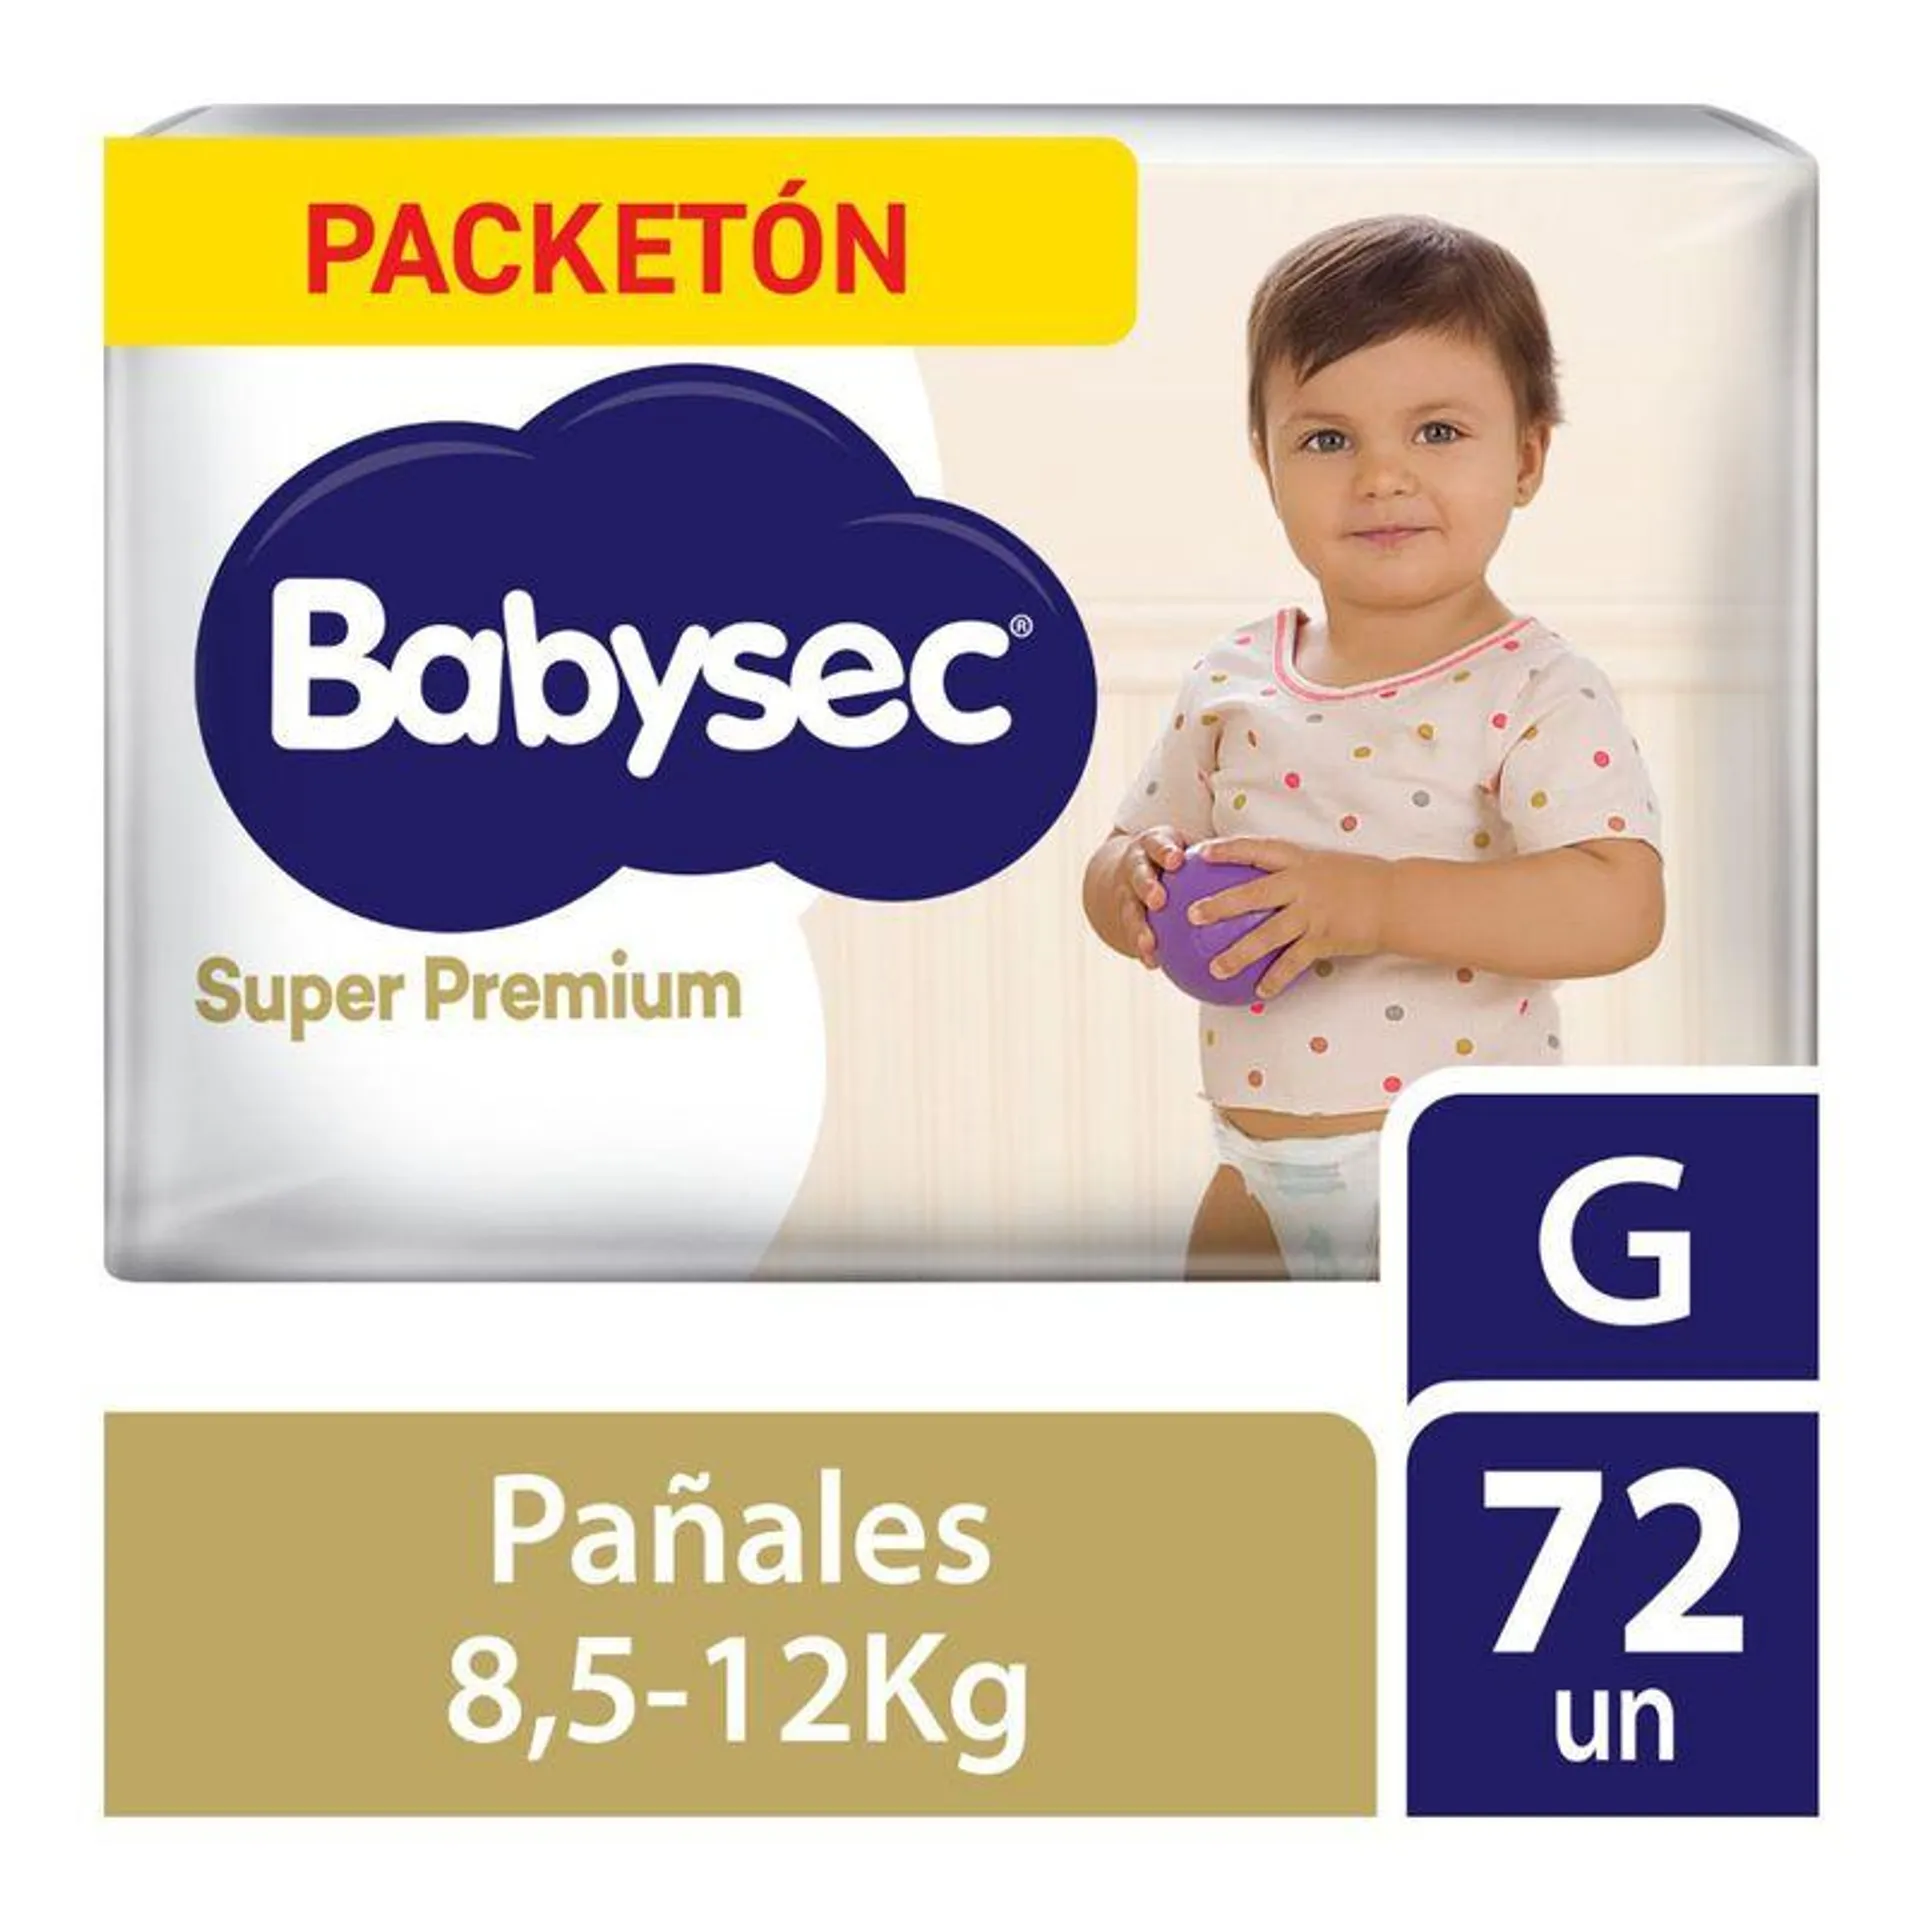 Pañales para Bebé Babysec Super Premium Talla G 72un